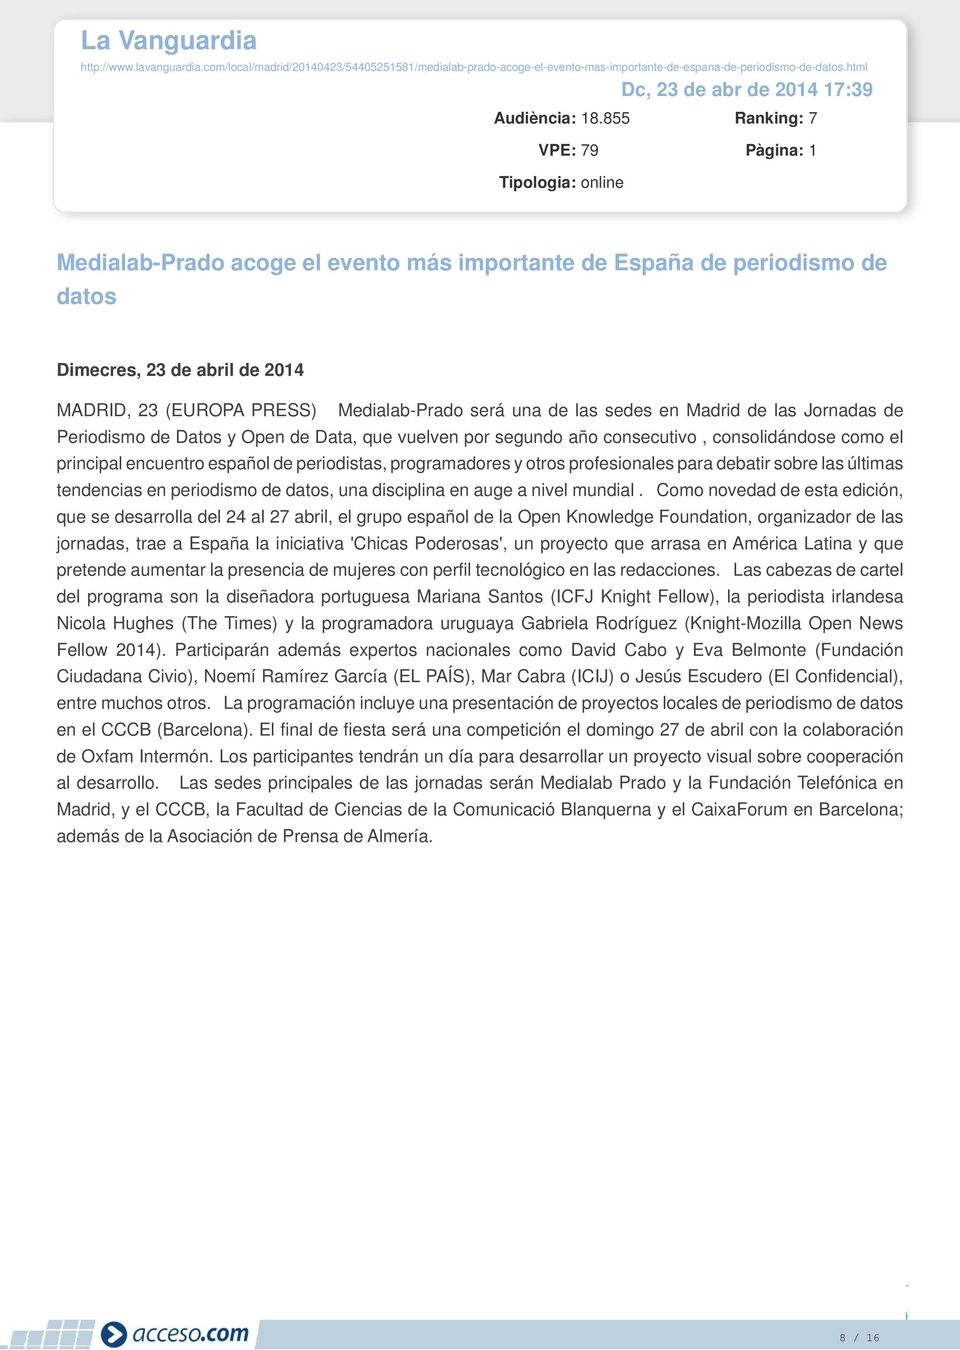 855 Ranking: 7 VPE: 79 Medialab-Prado acoge el evento más importante de España de periodismo de datos Dimecres, 23 de abril de 2014 MADRID, 23 (EUROPA PRESS) Medialab-Prado será una de las sedes en